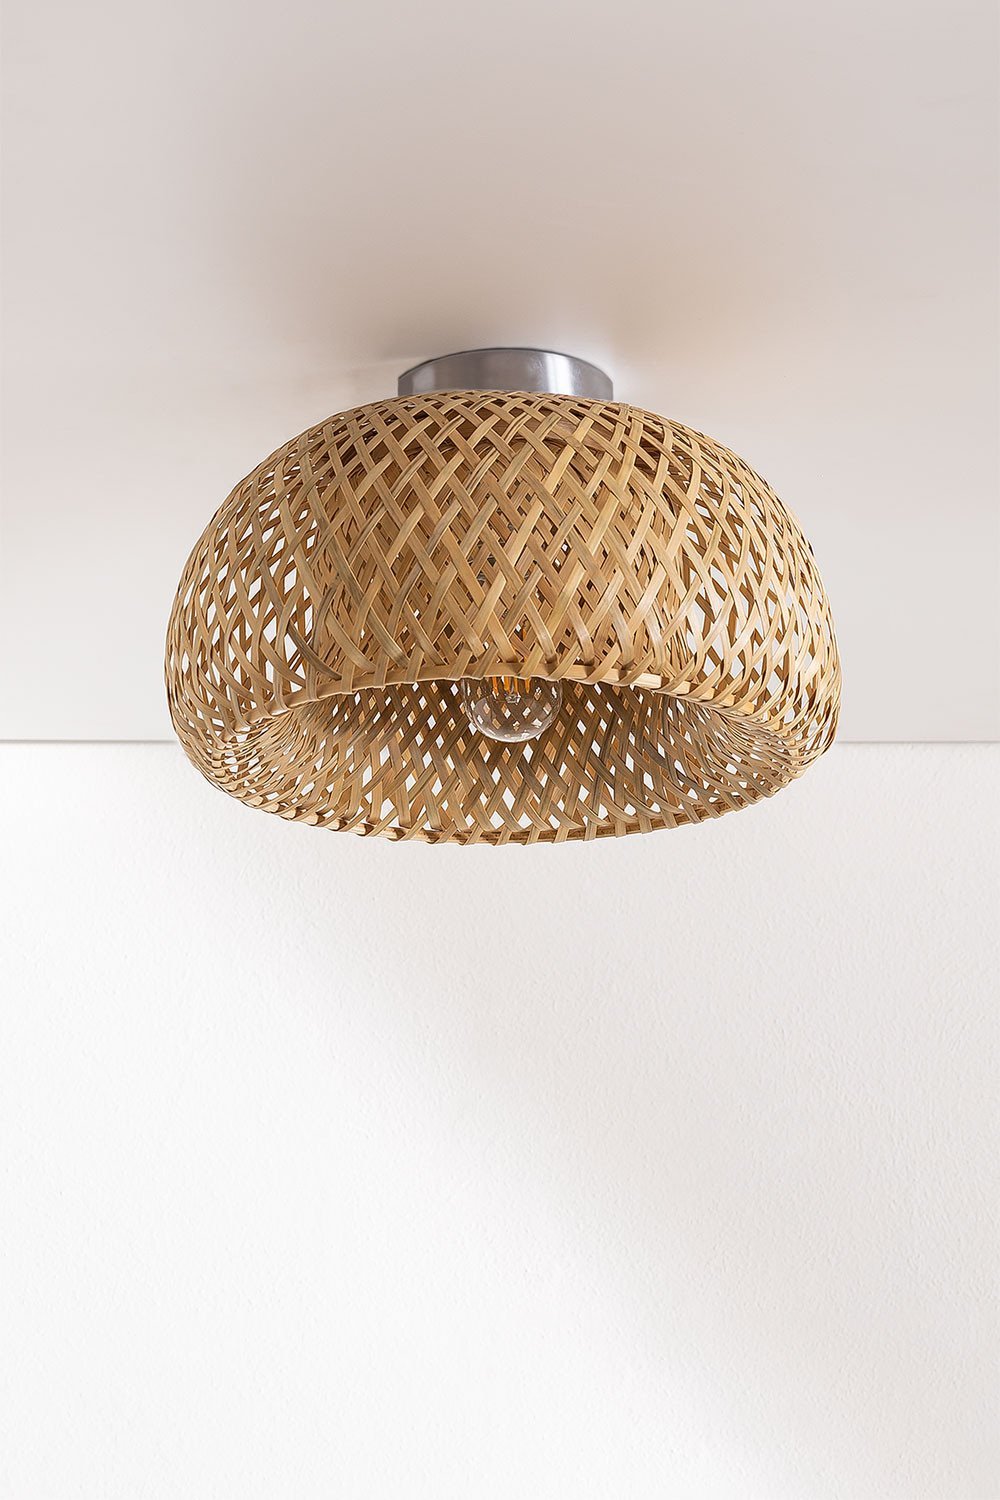 Bamboe plafondlamp Taumper Style, galerij beeld 1